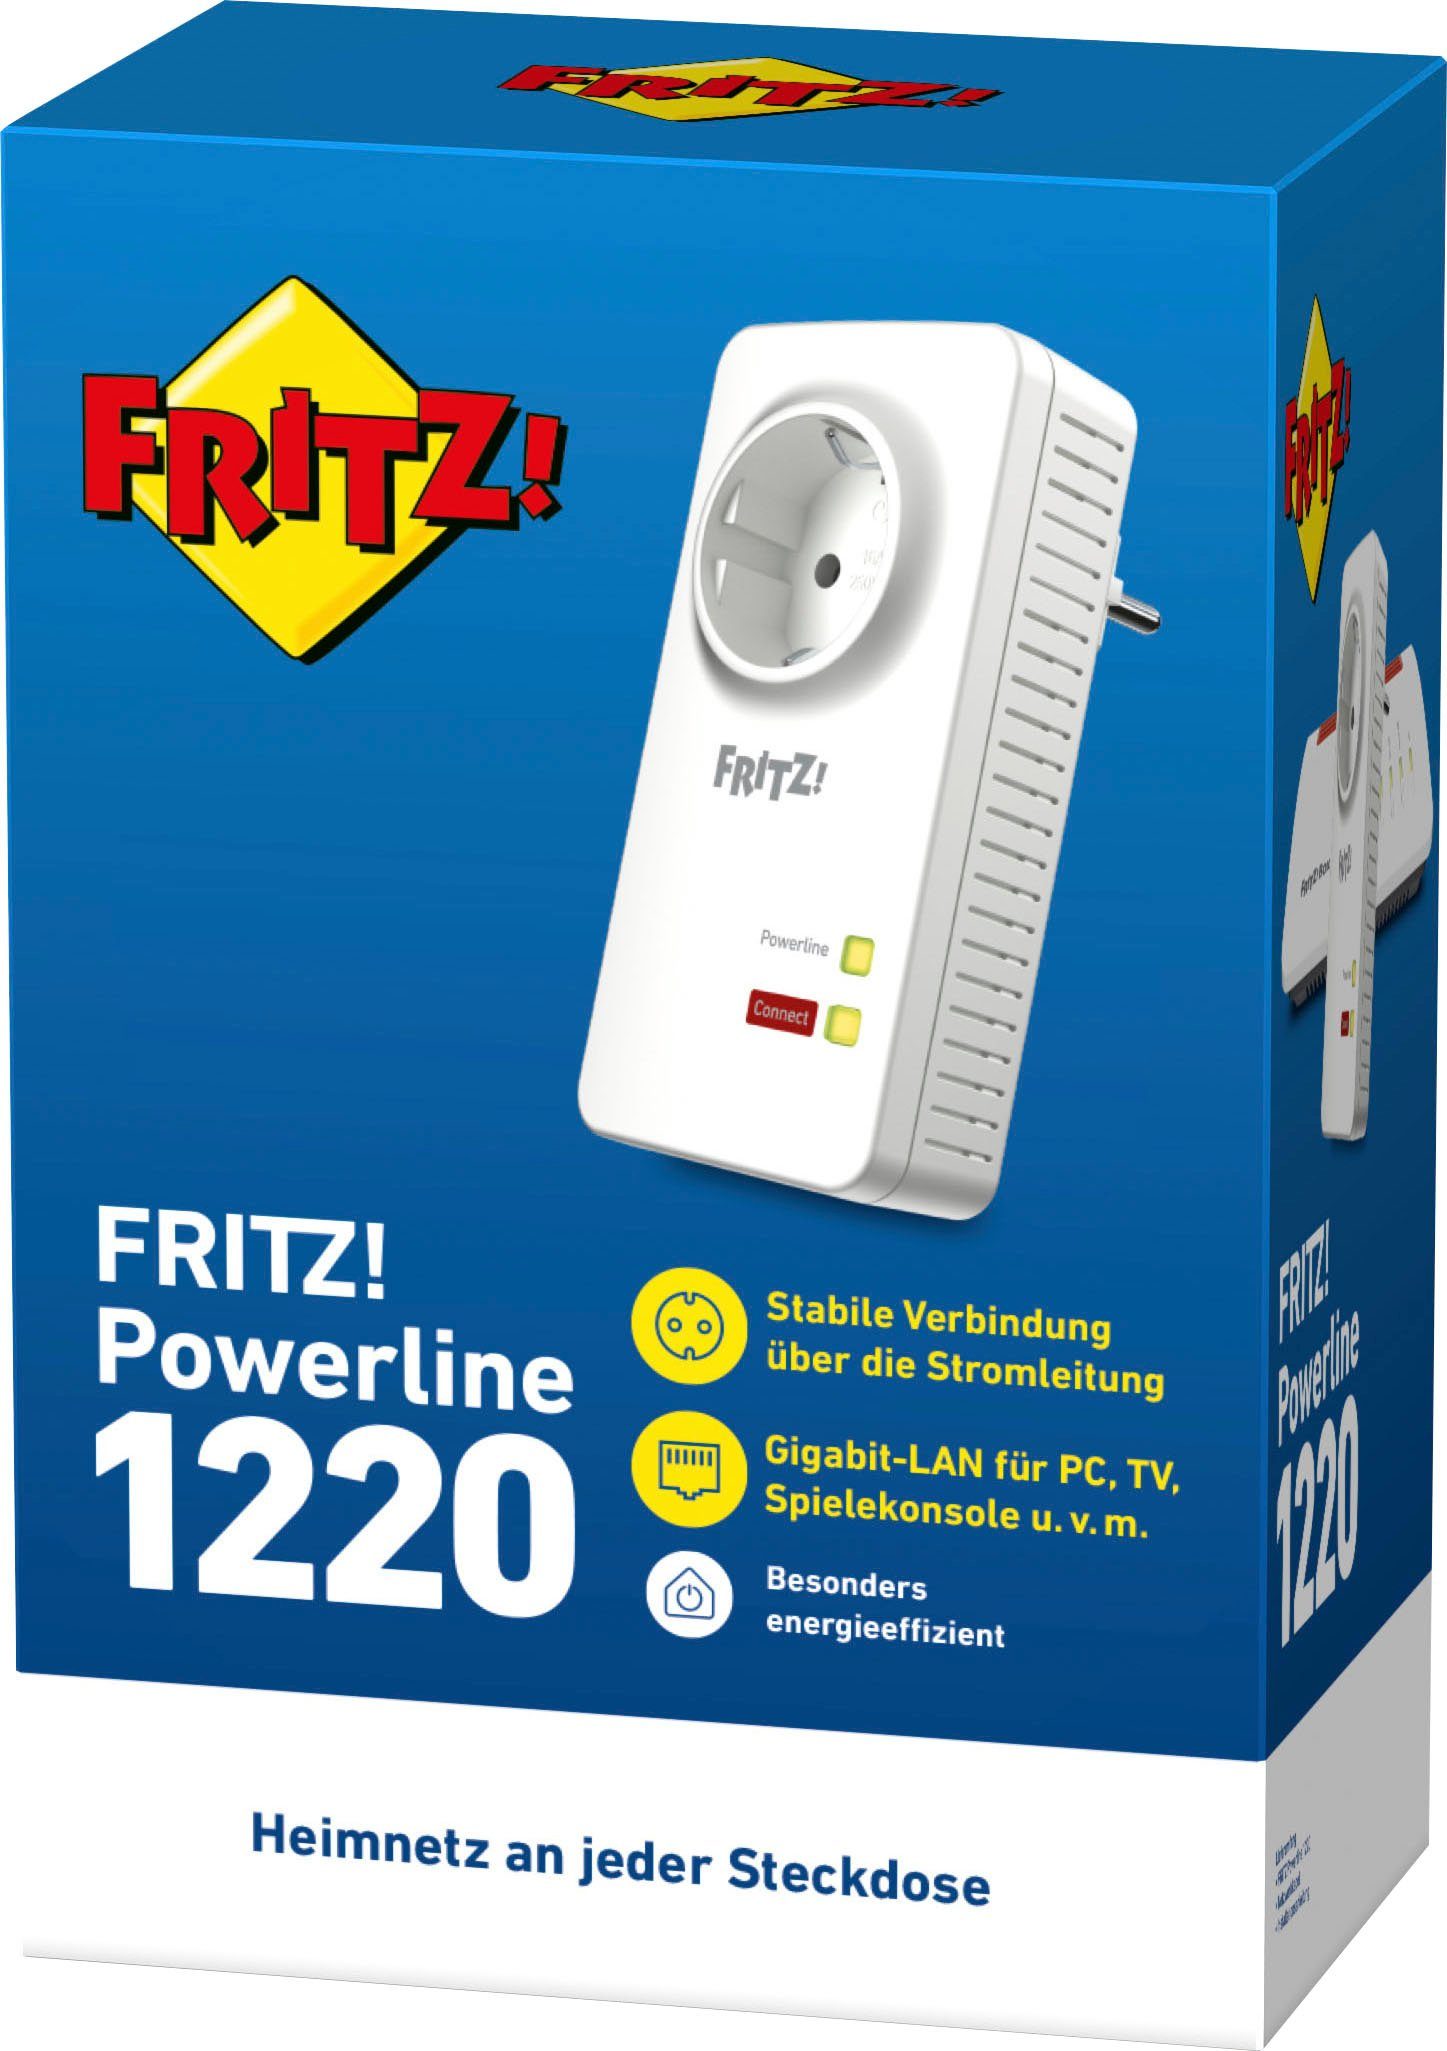 LAN-Router AVM FRITZ!Powerline 1220